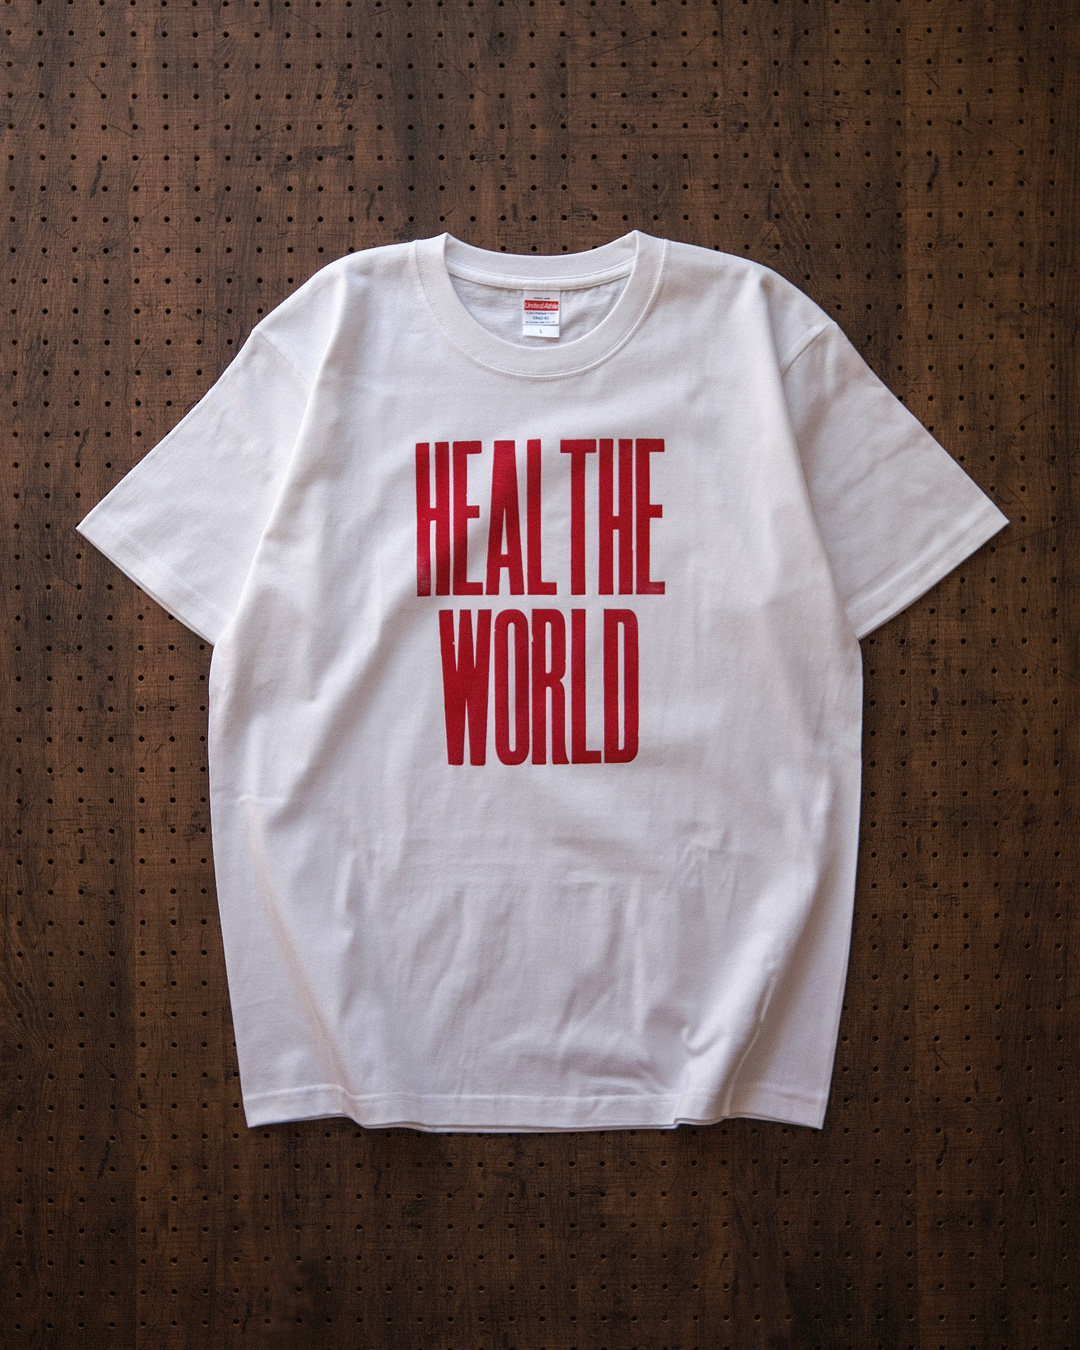 チャリティーTシャツ "heal the world charity tee" 発売のお知らせ